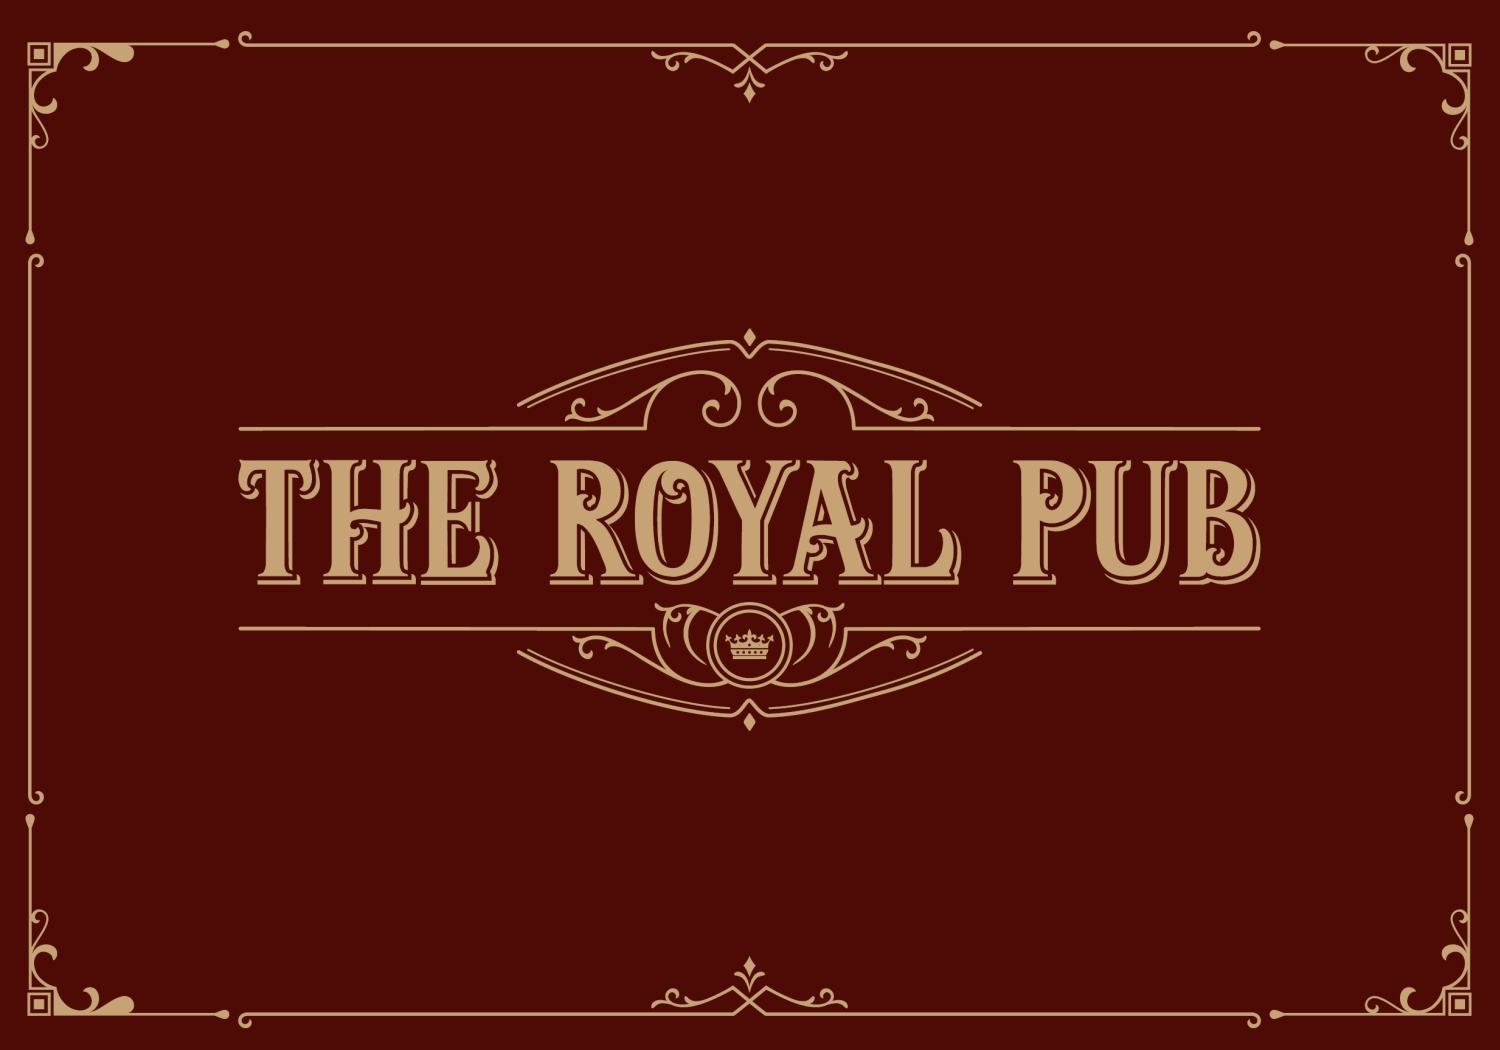 The Royal Pub opens at Disneyland Paris, Menu’s, Draft Beers and more!